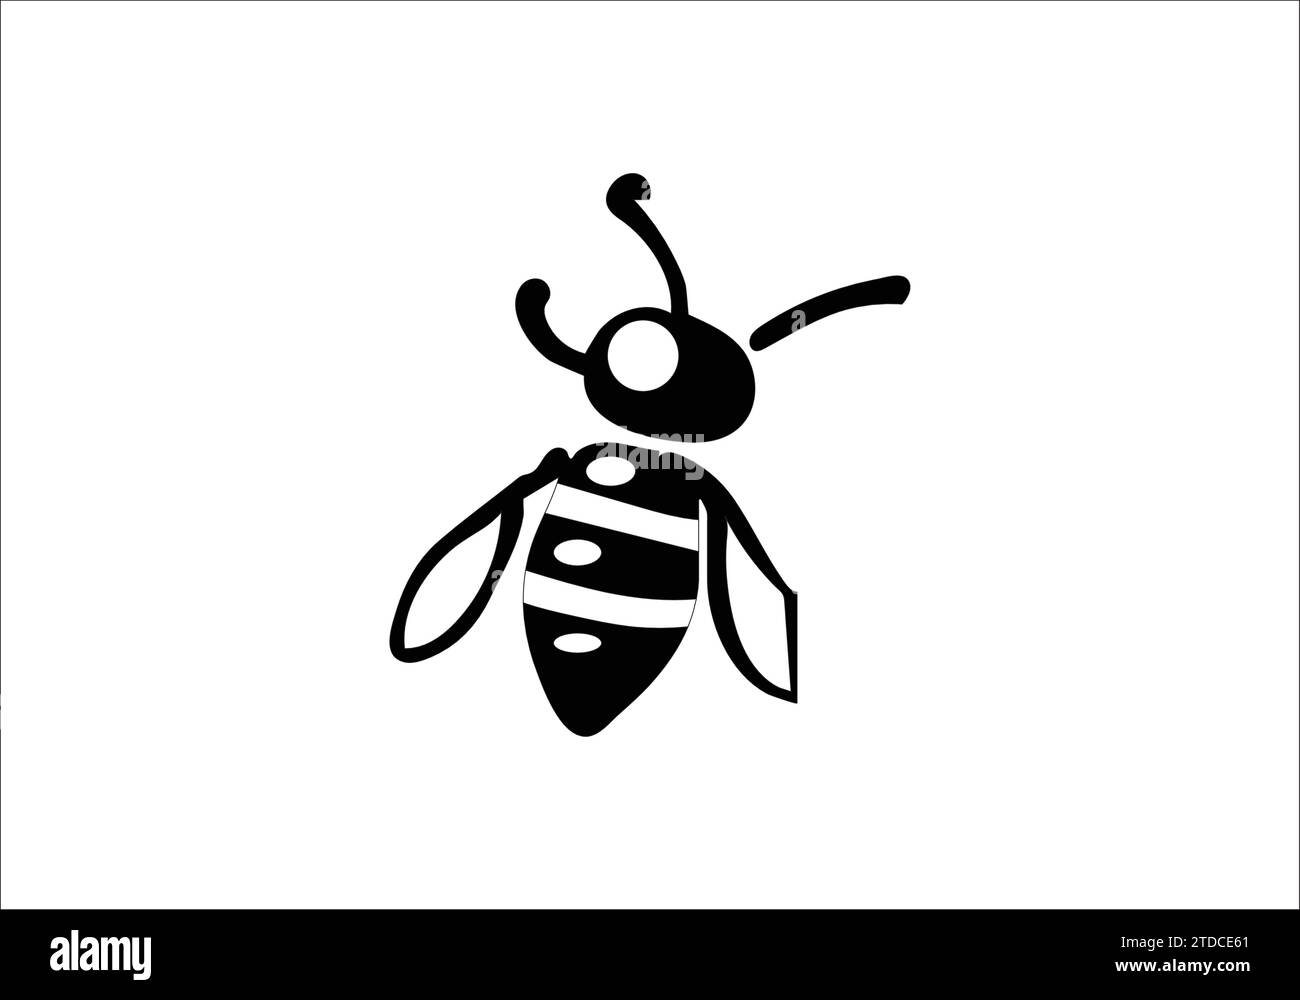 Africanized bee killer bee minimal style icon illustration design Stock Vector